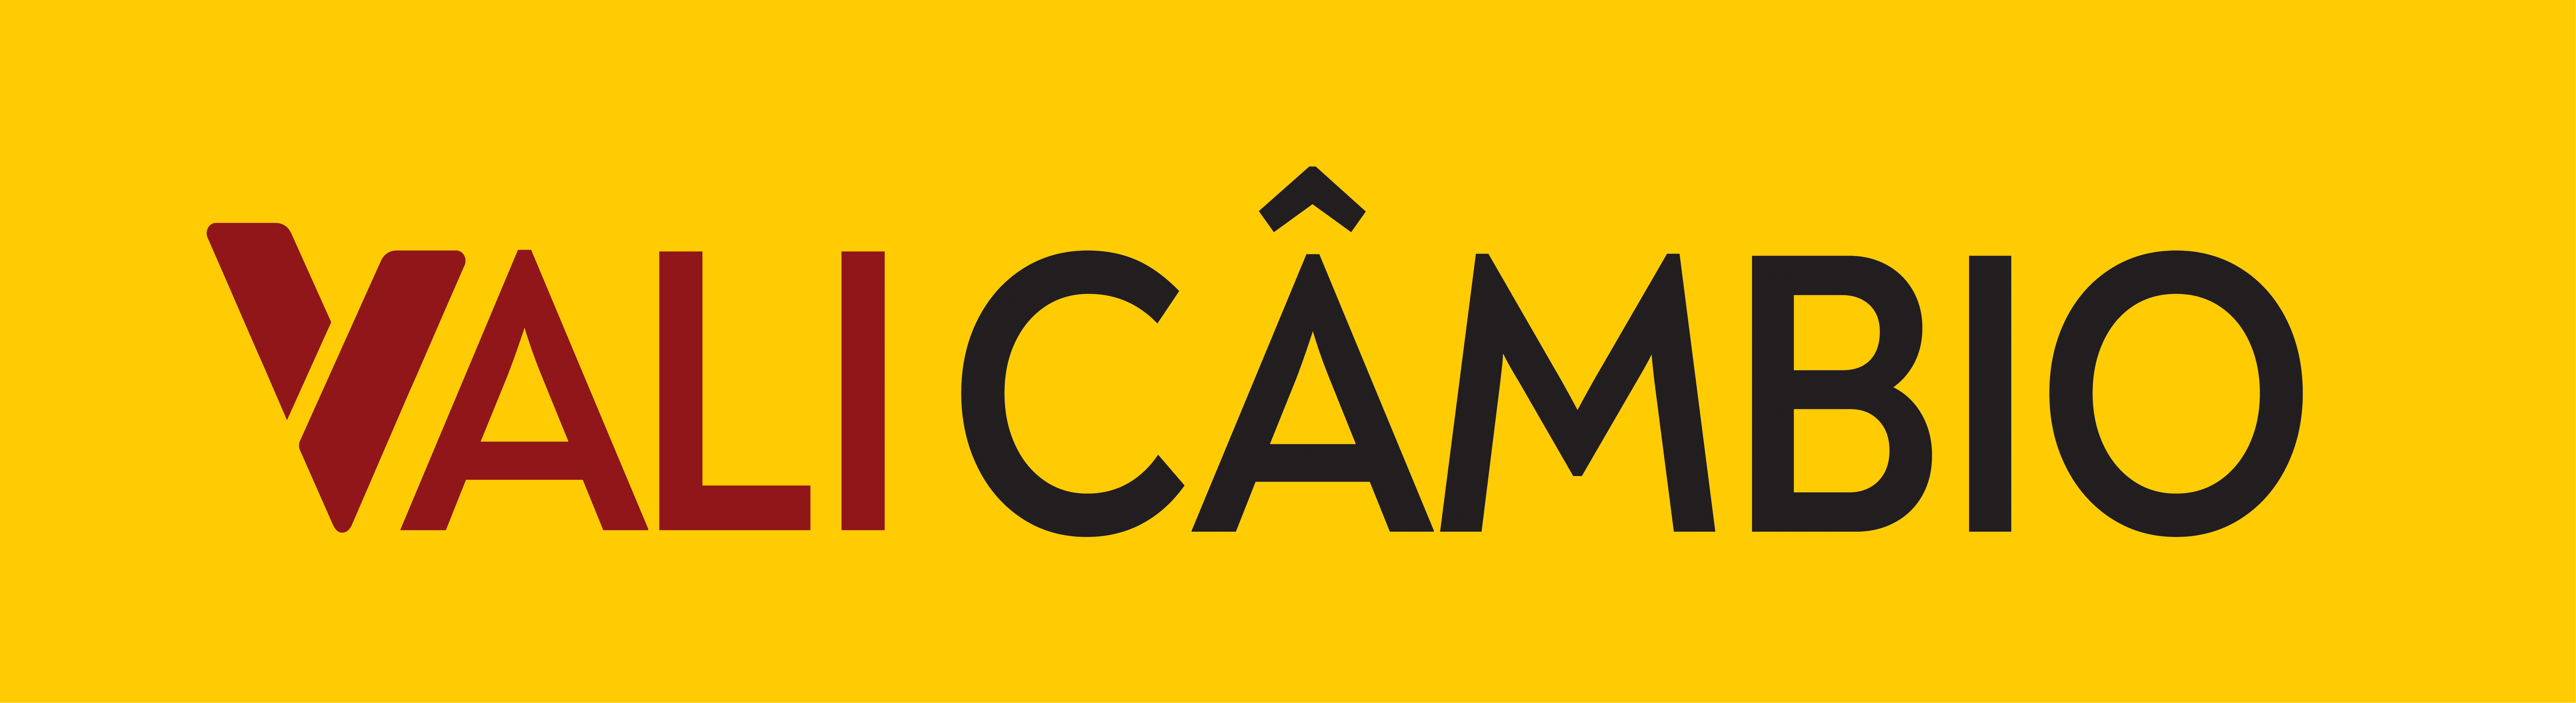 Vali Câmbio - Agência de Câmbio